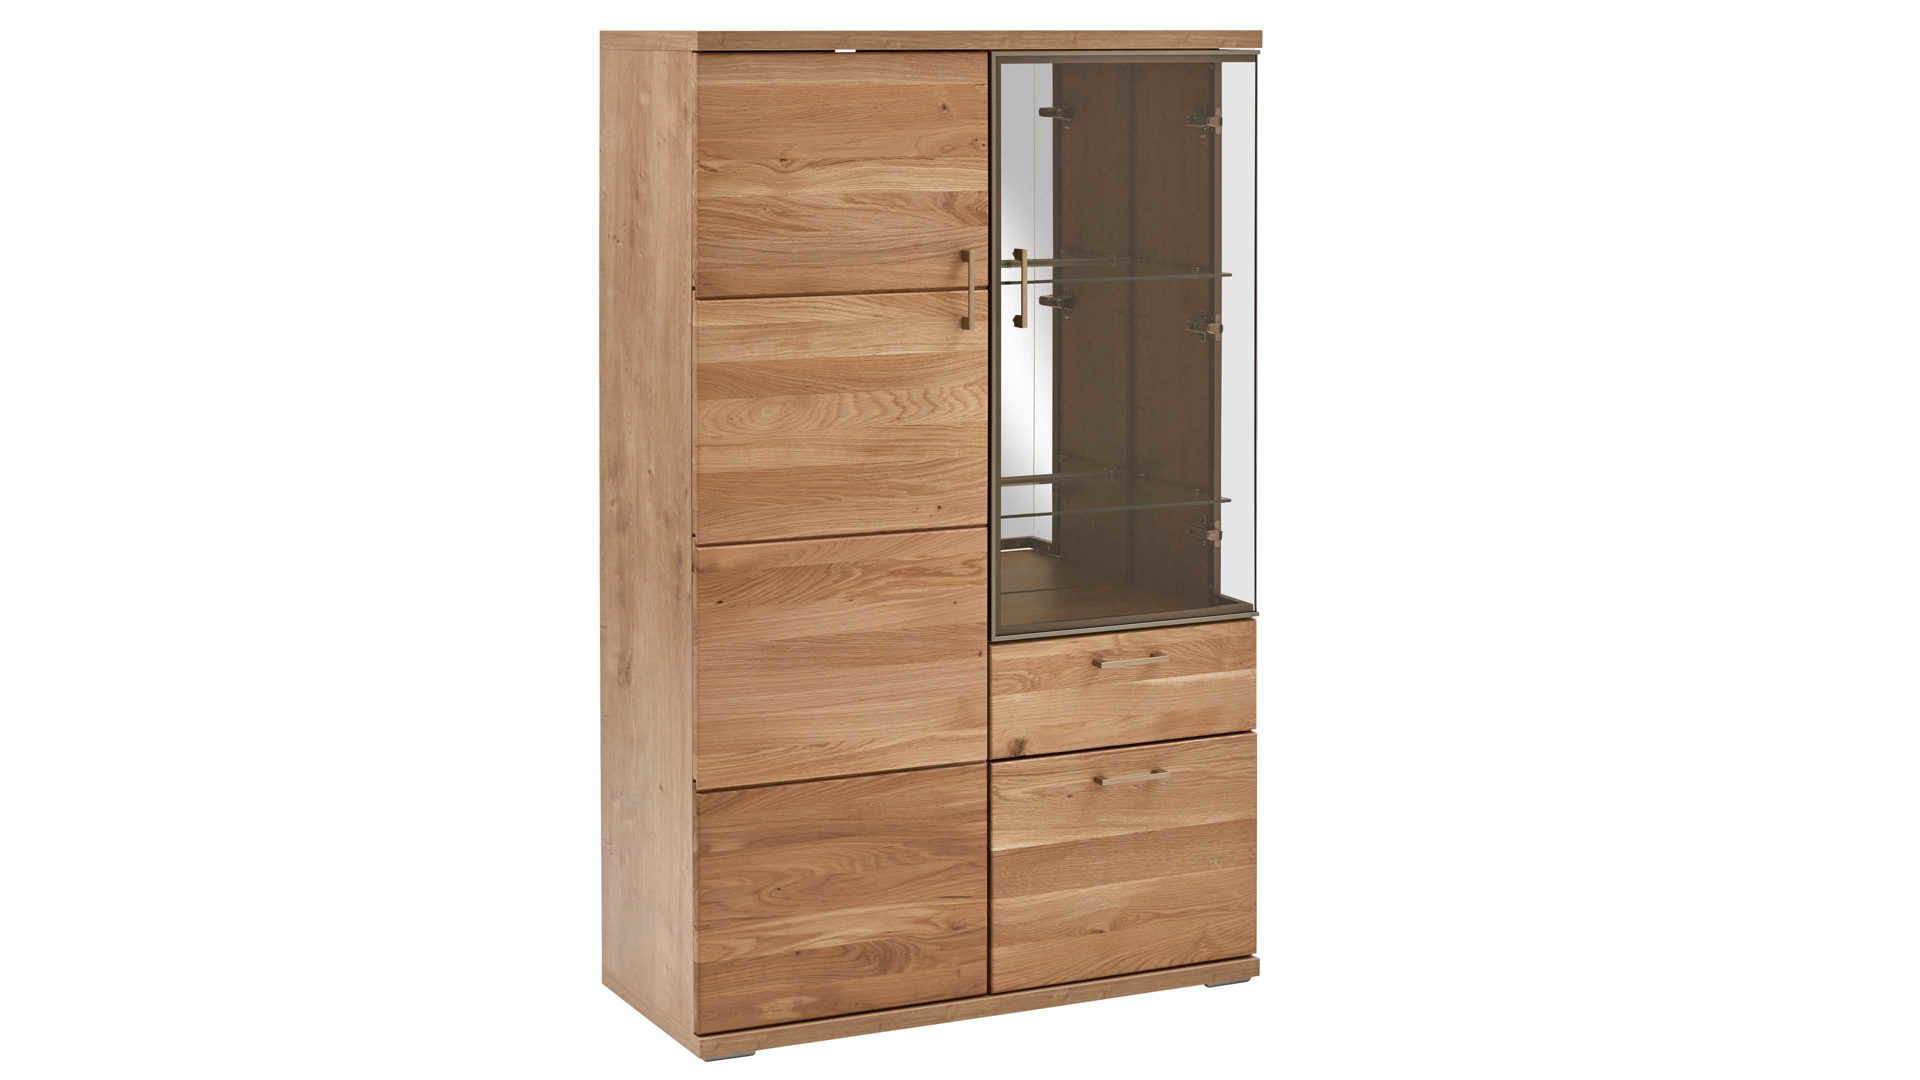 Vitrine Ideal möbel aus Holz in Holzfarben Wohnprogramm Brilon - Vitrine Alteiche & braunes Parsolglas – drei Türen, eine Schublade - Höhe ca. 143 cm